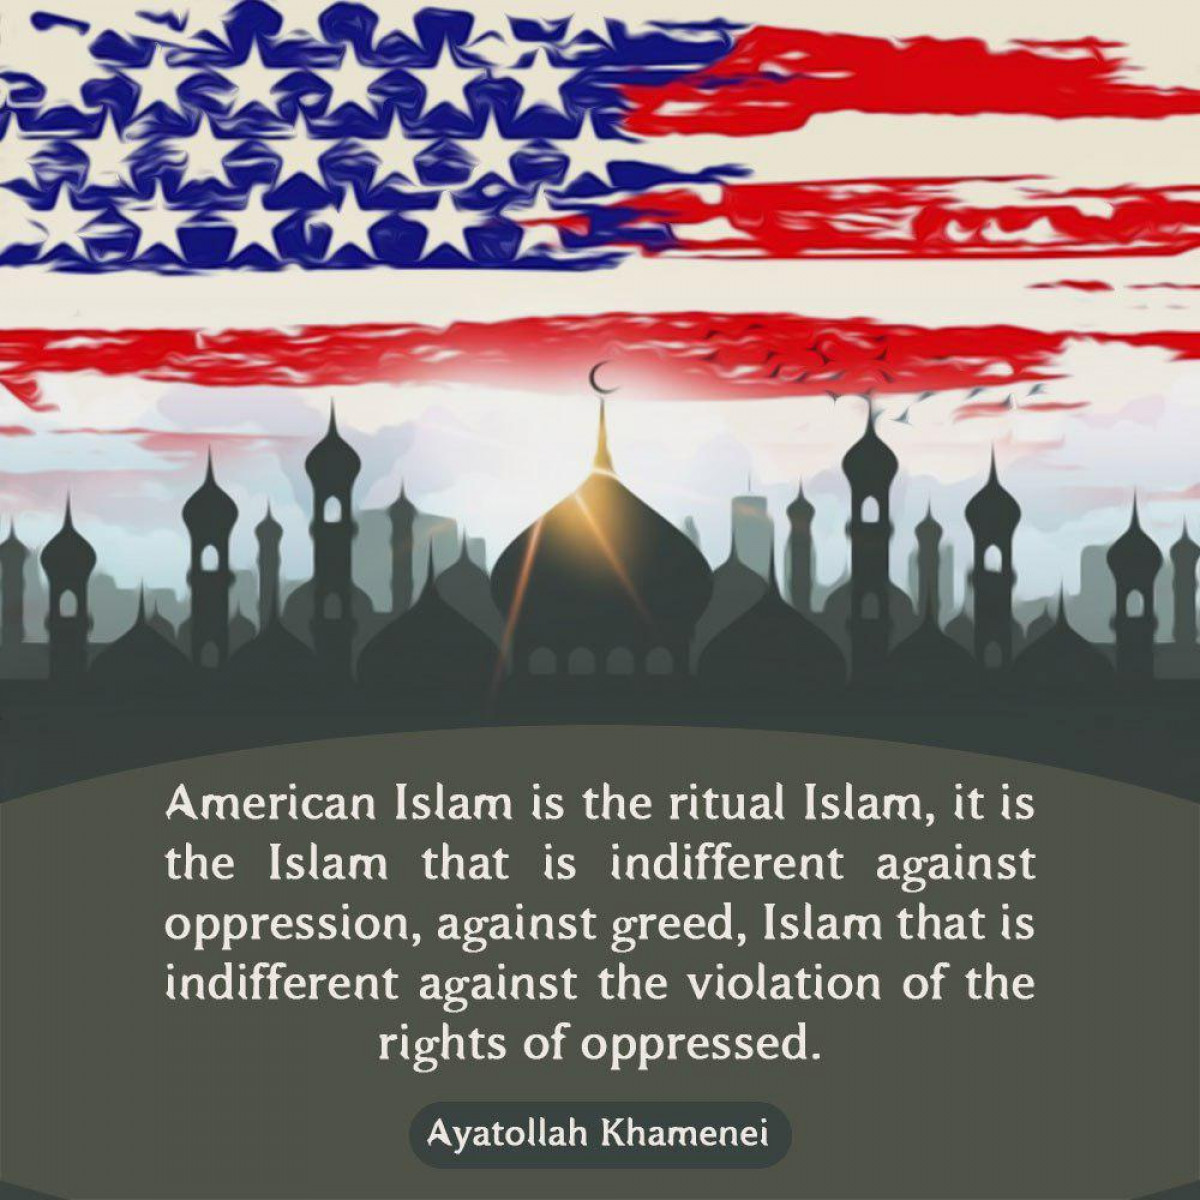 American Islam is the ritual Islam